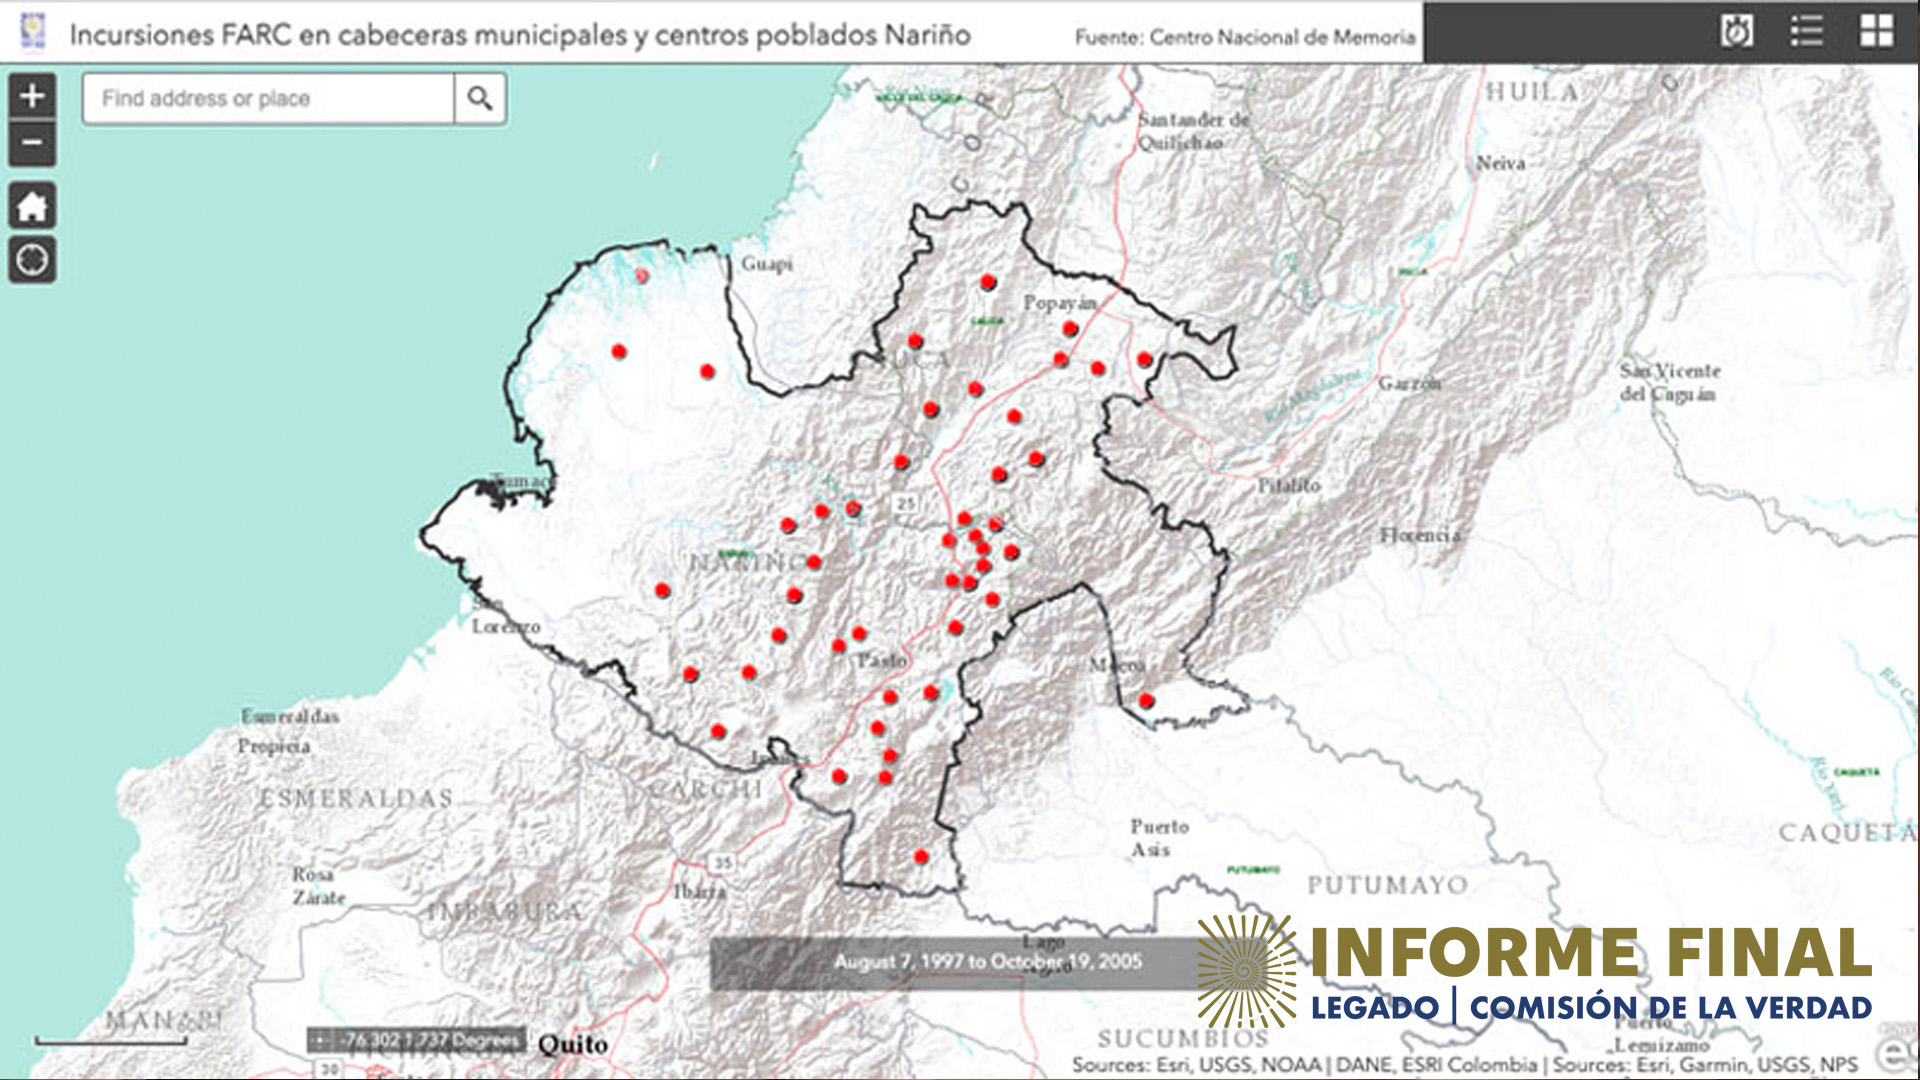 Ilustración de mapa de incursiones de las FARC en cabeceras municipales y centros poblados Nariño.